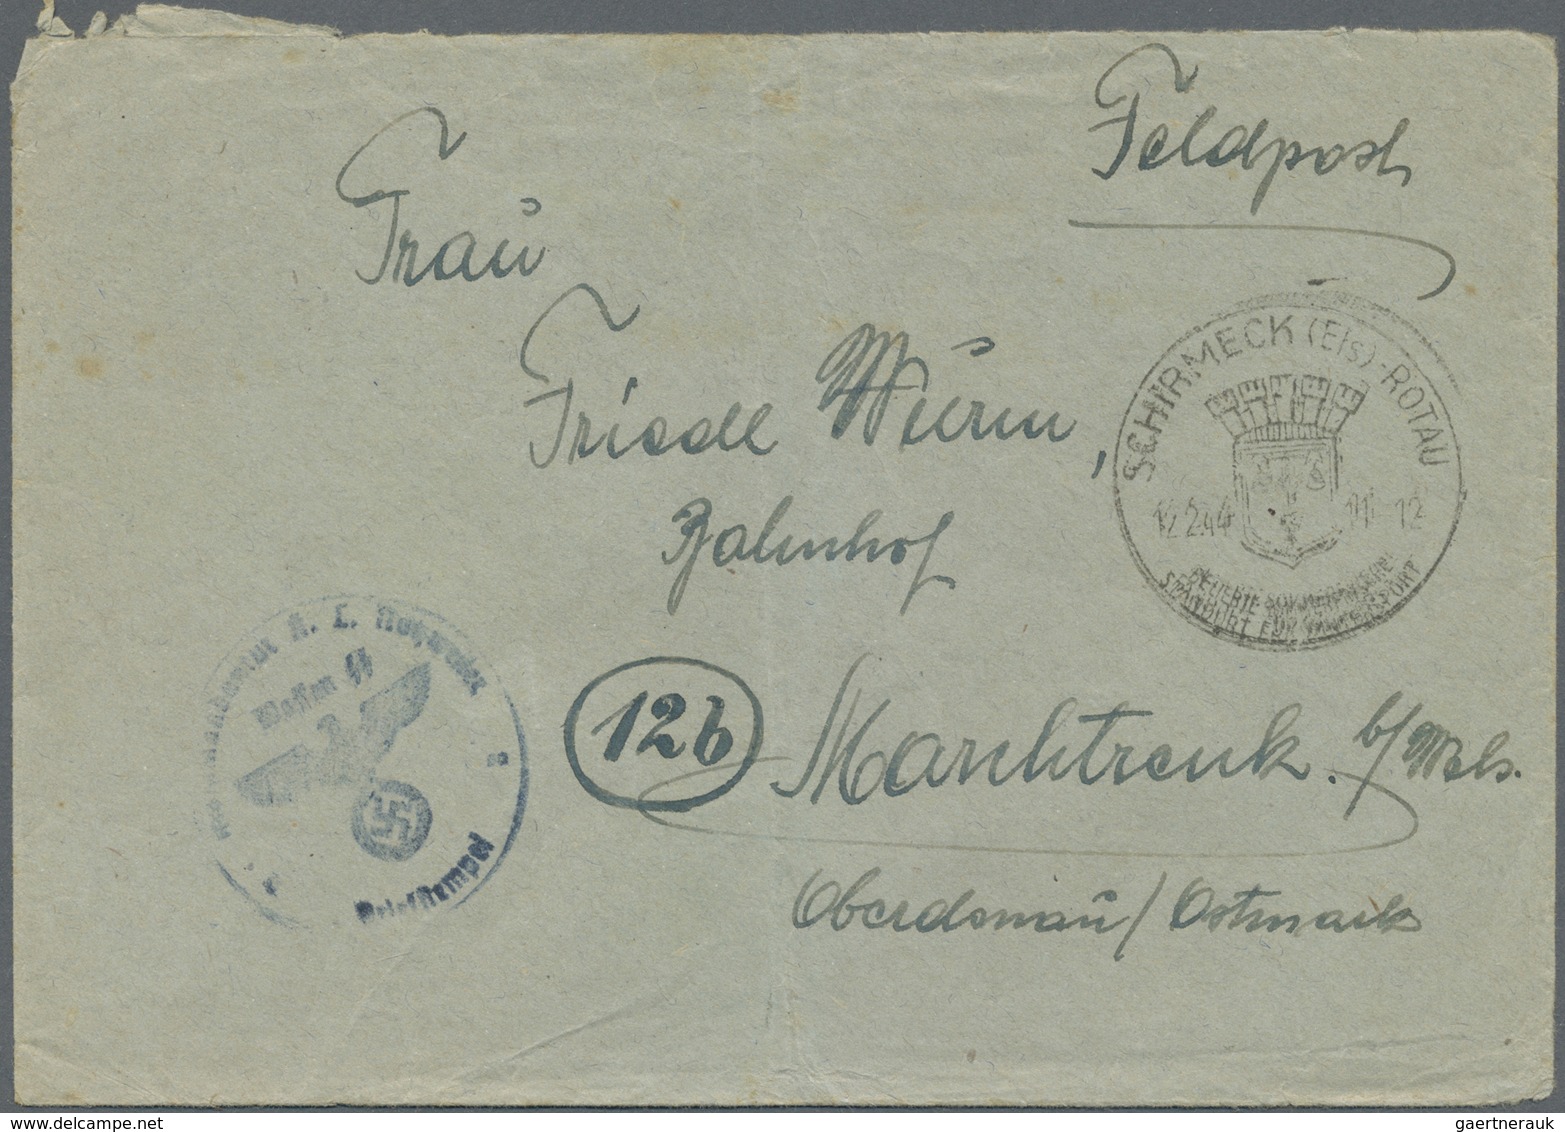 Br KZ-Post: Natzweiler 1944 (12.2), Waffen SS Feldpost-Brief Mit Kompl. Inhalt Und Zeichnung Mit Briefs - Storia Postale